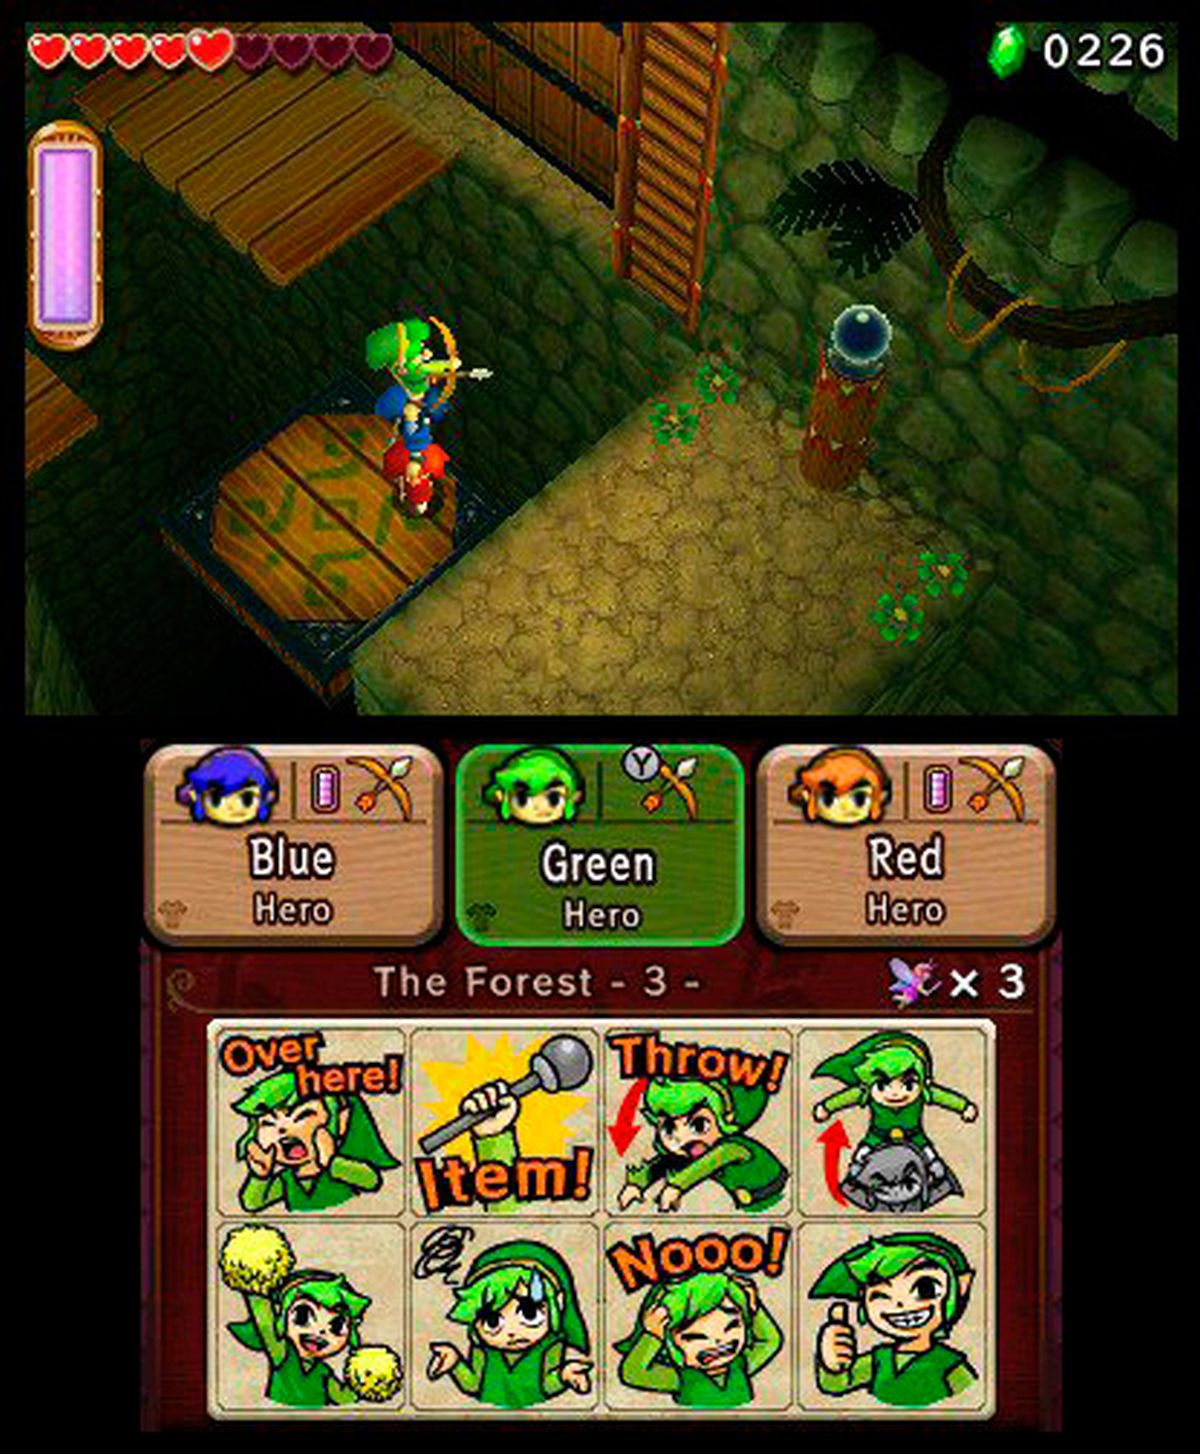 Zelda Triforce Heroes 3DS Zelda Budget 3DS] The - of [Nintendo Legend